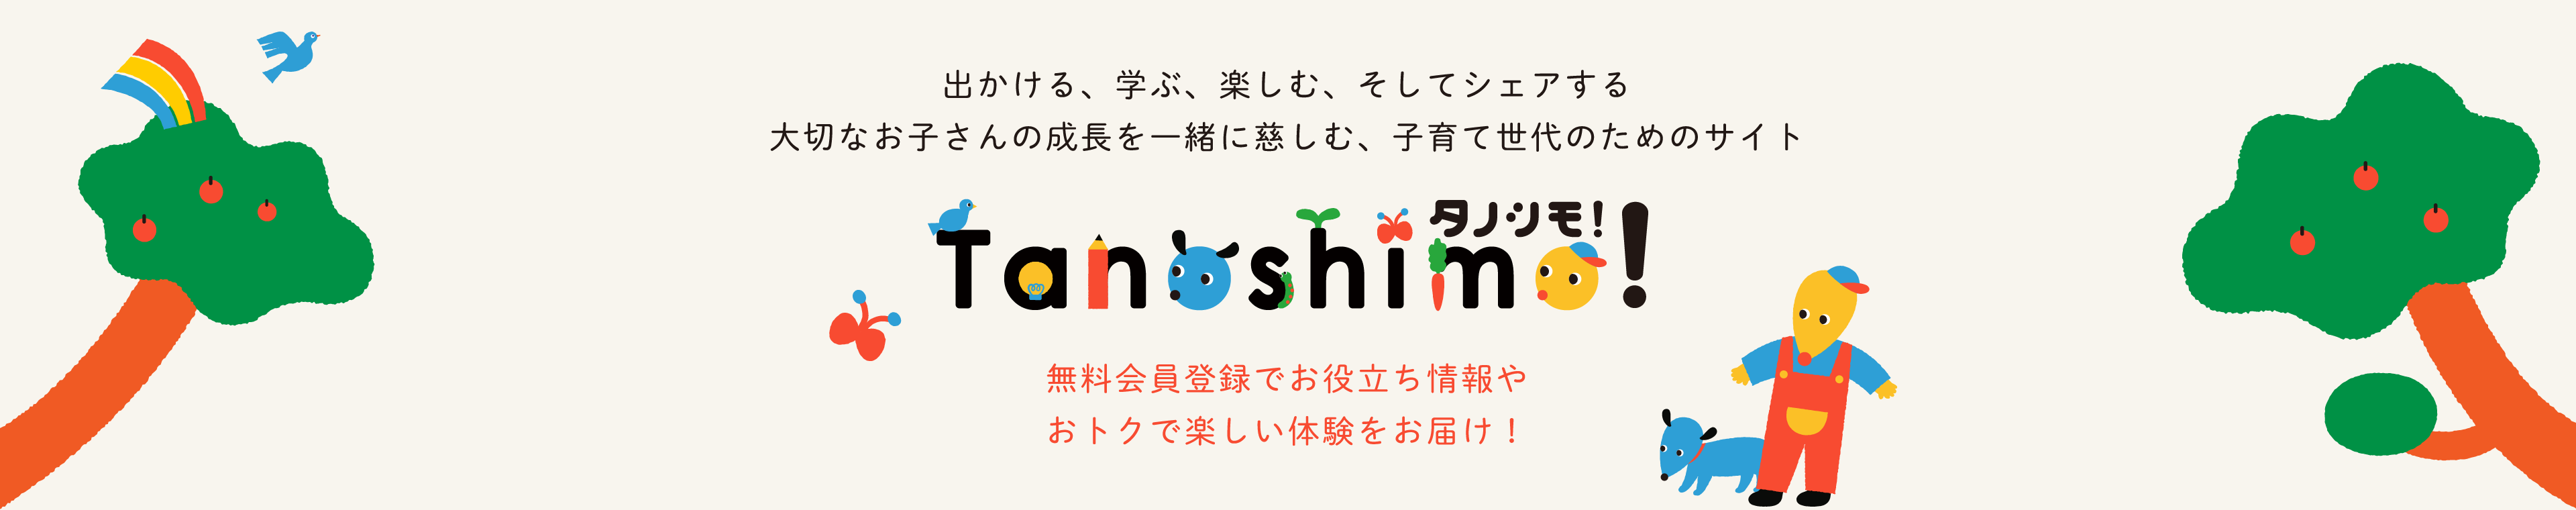 タノシモ -tanoshimo- ｜親子でおでかけ 愛知・岐阜・三重・静岡・長野の人気スポットであそぼ、たのしも。子育て世代お役立ちサイト